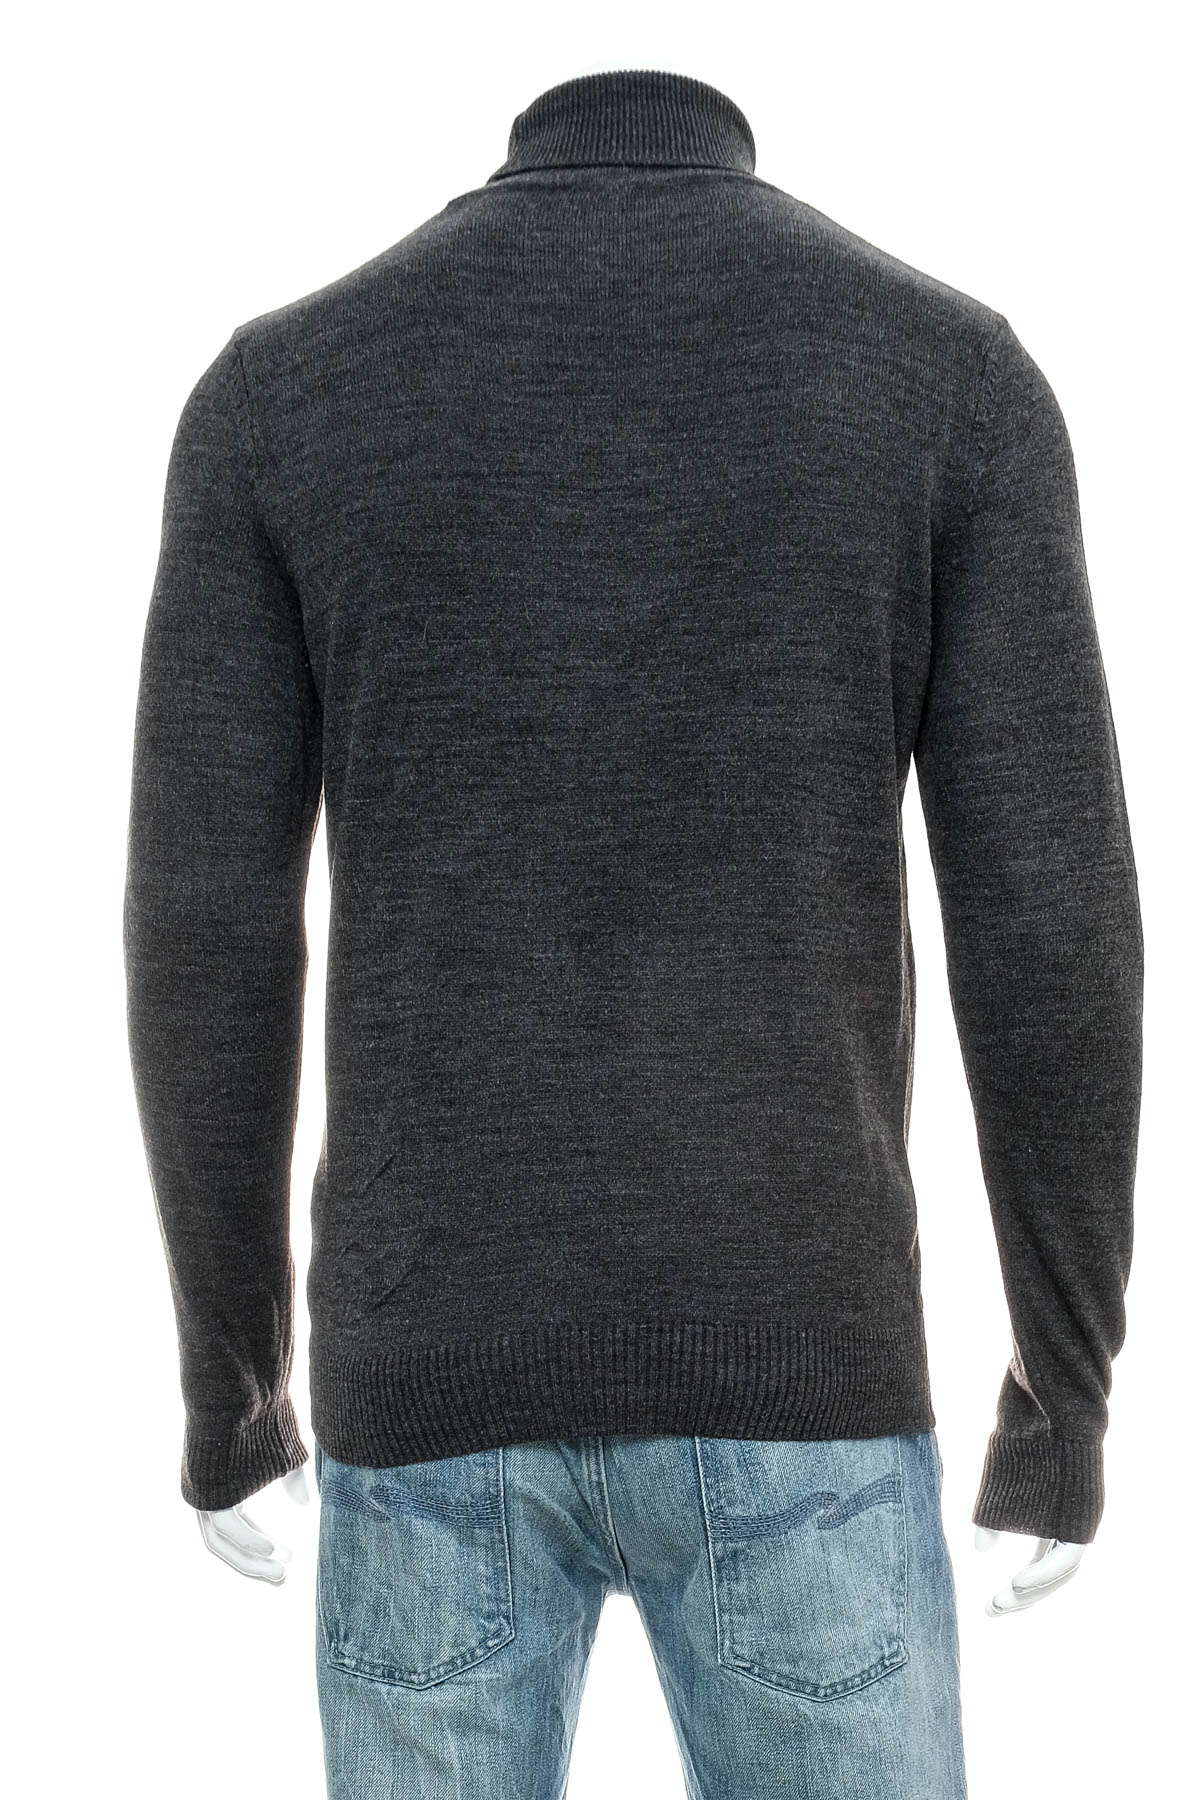 Men's sweater - DeFacto - 1